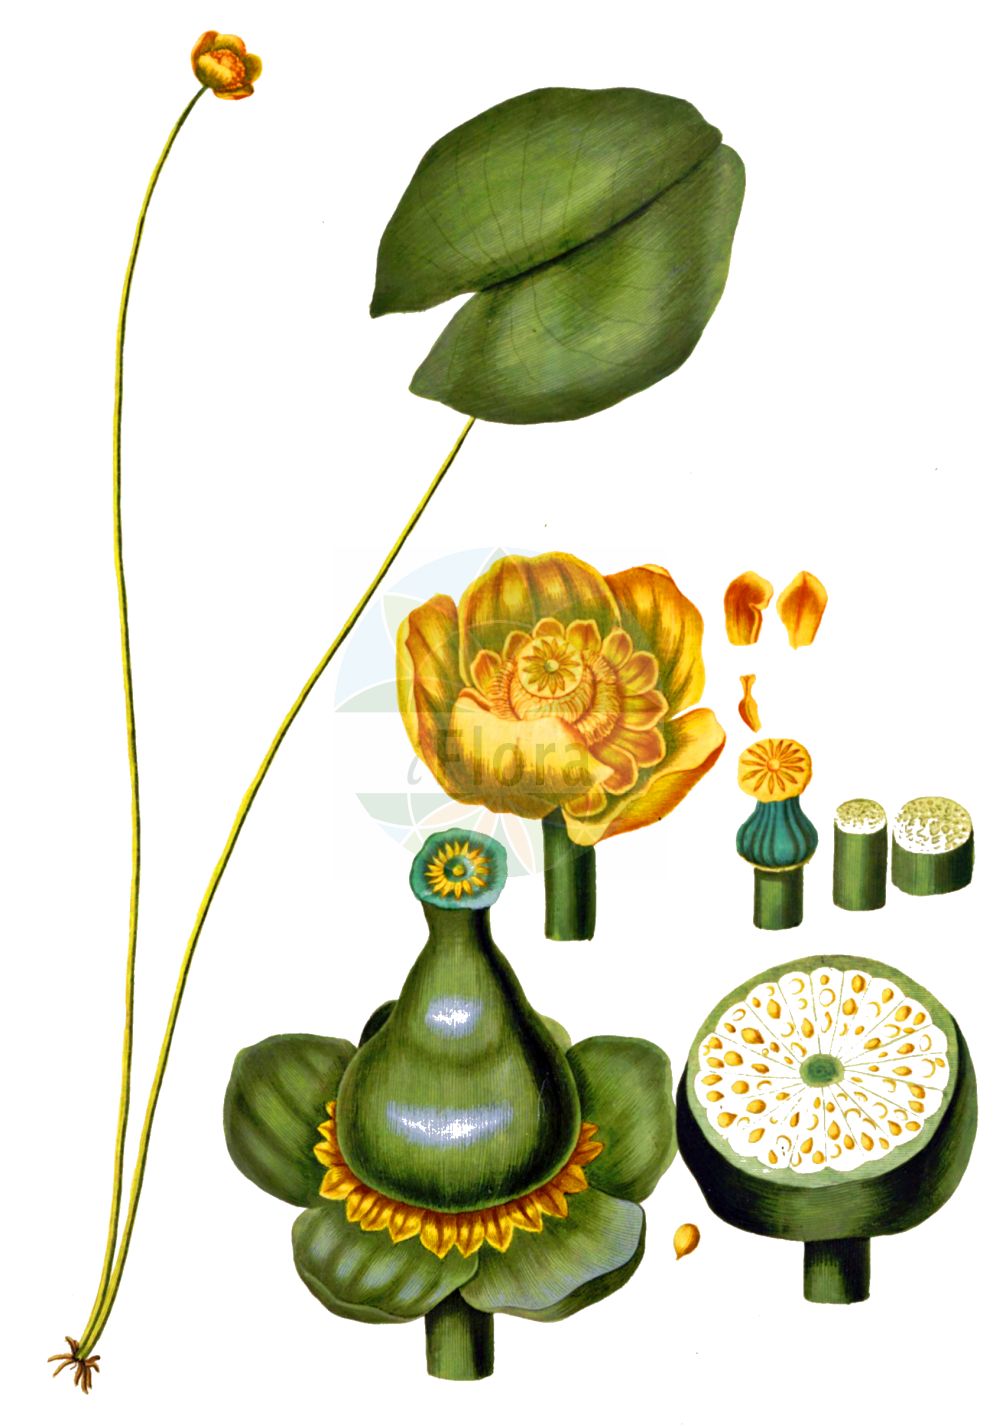 Historische Abbildung von Nuphar lutea (Gelbe Teichrose - Yellow Water-lily). Das Bild zeigt Blatt, Bluete, Frucht und Same. ---- Historical Drawing of Nuphar lutea (Gelbe Teichrose - Yellow Water-lily). The image is showing leaf, flower, fruit and seed.(Nuphar lutea,Gelbe Teichrose,Yellow Water-lily,Nenuphar luteum,Nuphar lutea,Nuphar sericea,Nymphaea lutea,Nymphozanthus luteus,Gelbe Teichrose,Grosse Teichrose,Mummel,Yellow Water-lily,Cow Lily,Spatterdock,Yellow Pond Lily,Nuphar,Teichrose,Pond-lily,Nymphaeaceae,Seerosengewächse,Water-lily family,Blatt,Bluete,Frucht,Same,leaf,flower,fruit,seed,Oeder (1761-1883))